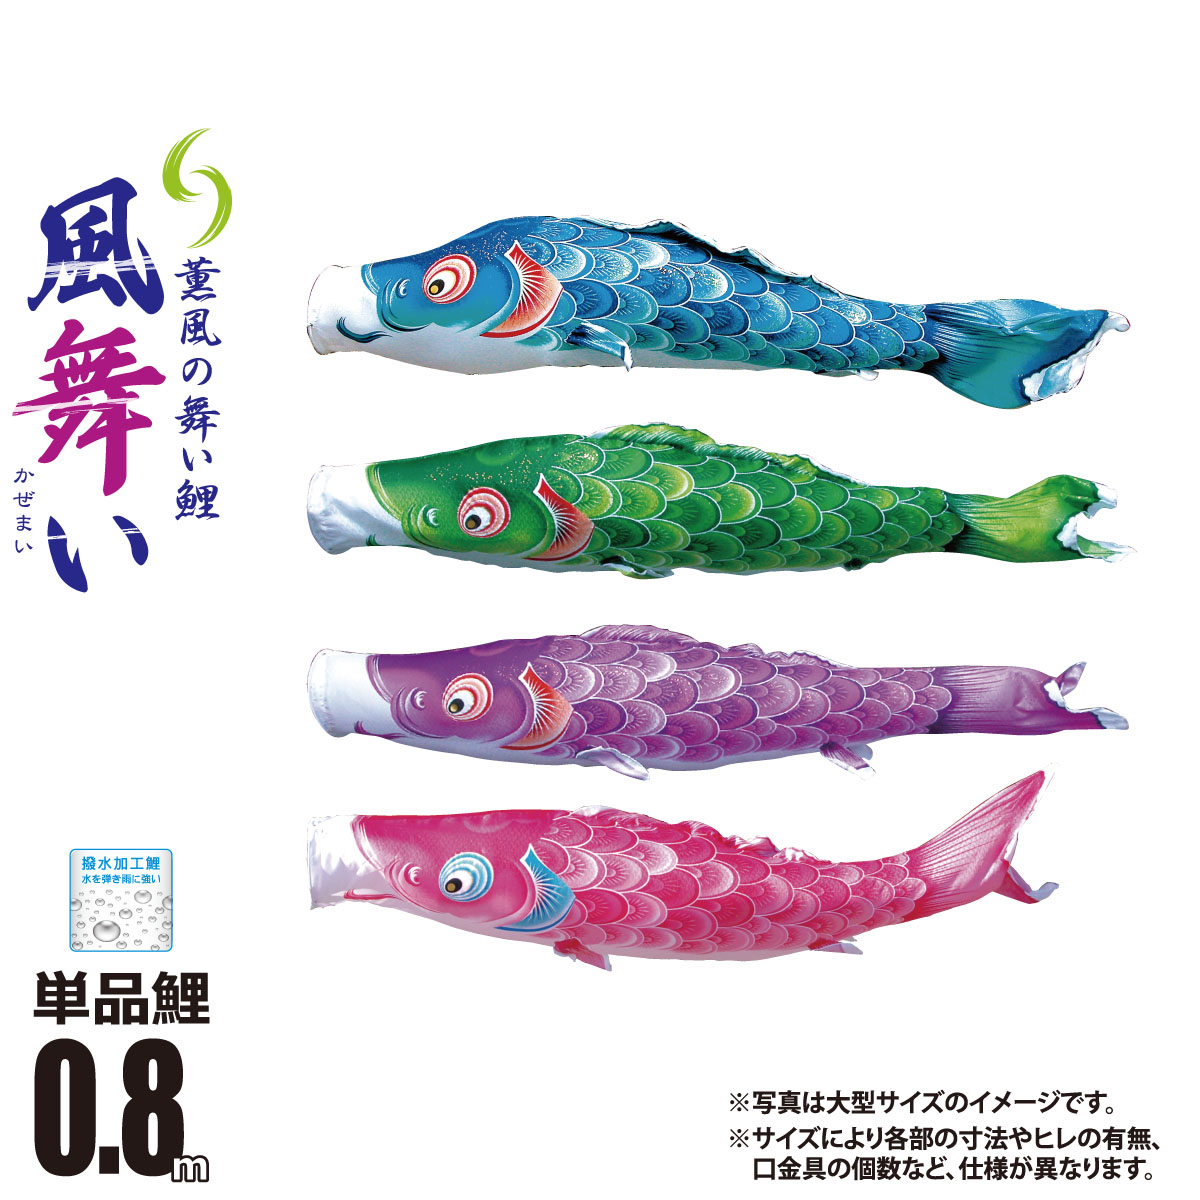 【楽天市場】鯉のぼり 単品 風舞い 0.8m 口金具付き カラー 青鯉|緑鯉|紫鯉|ピンク鯉 ポリエステル製 撥水加工 はっ水加工 日本製